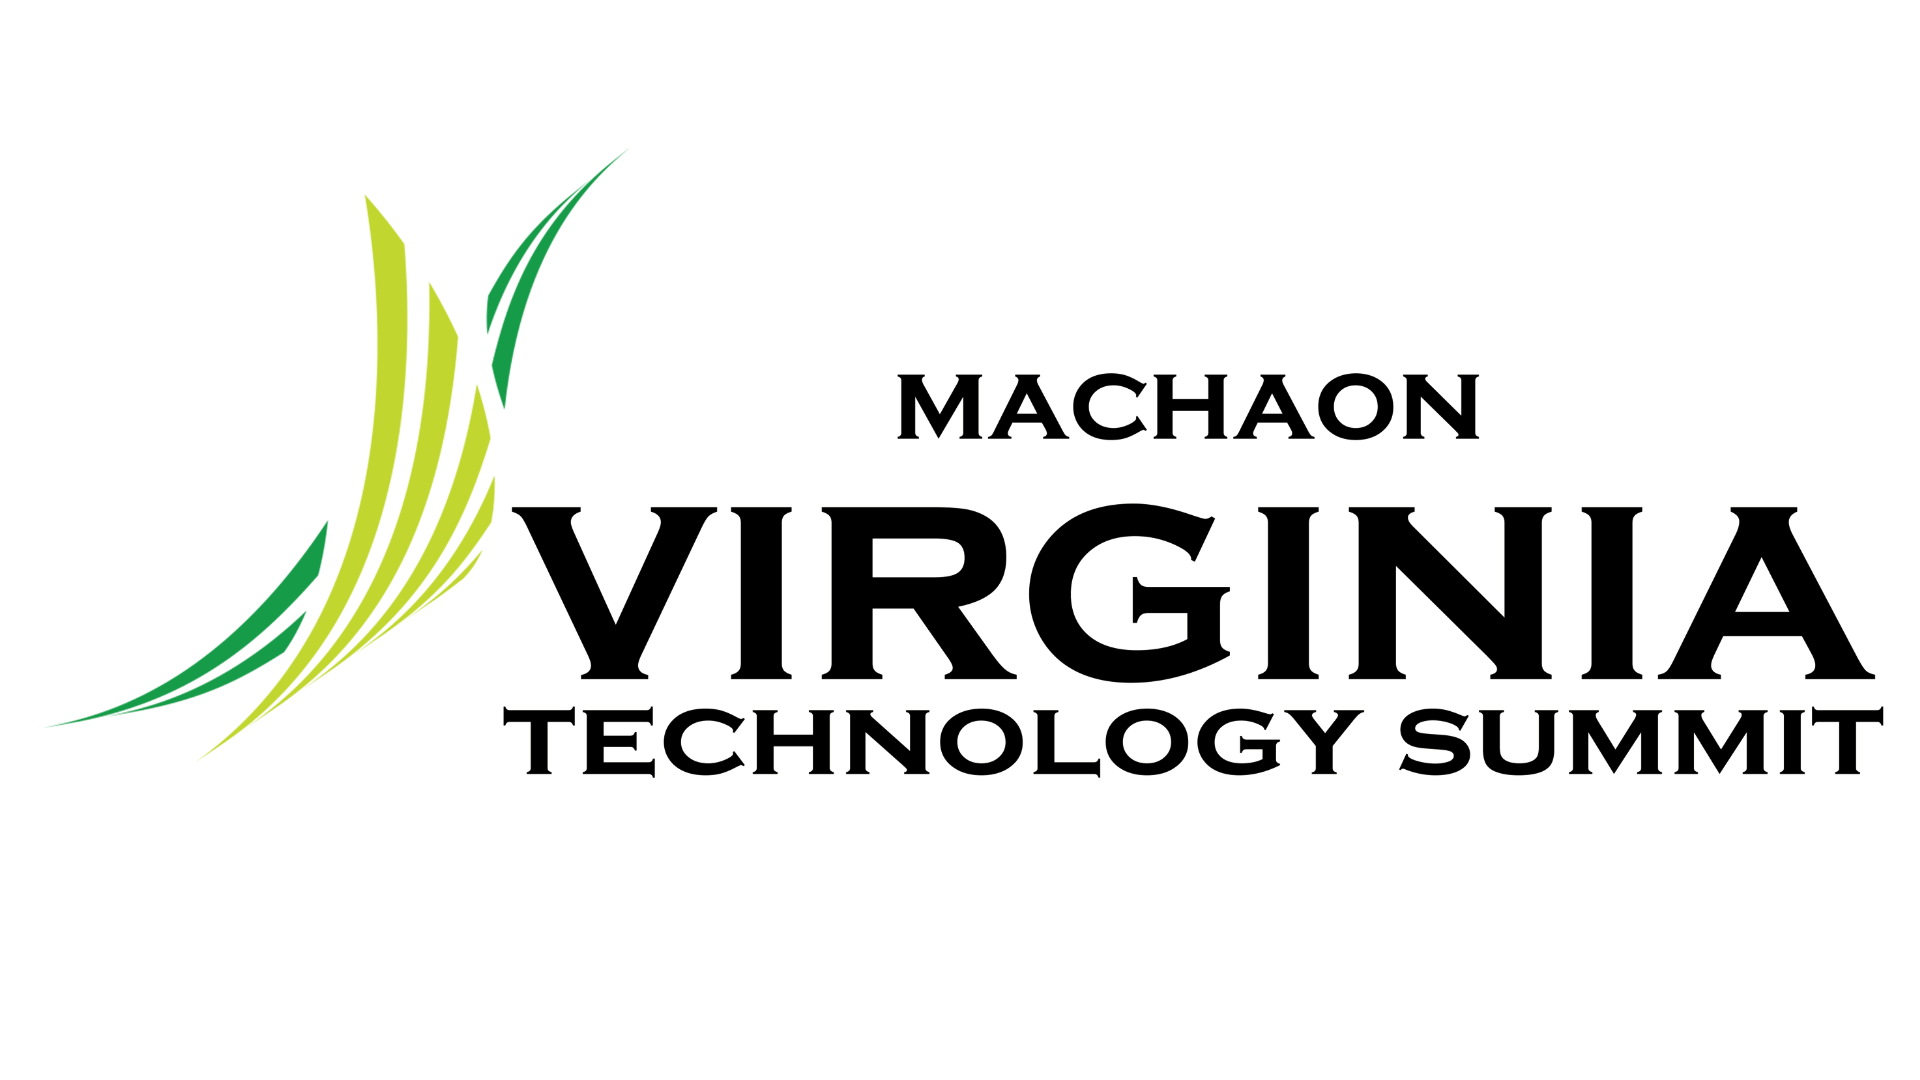 Virginia Technology Summit